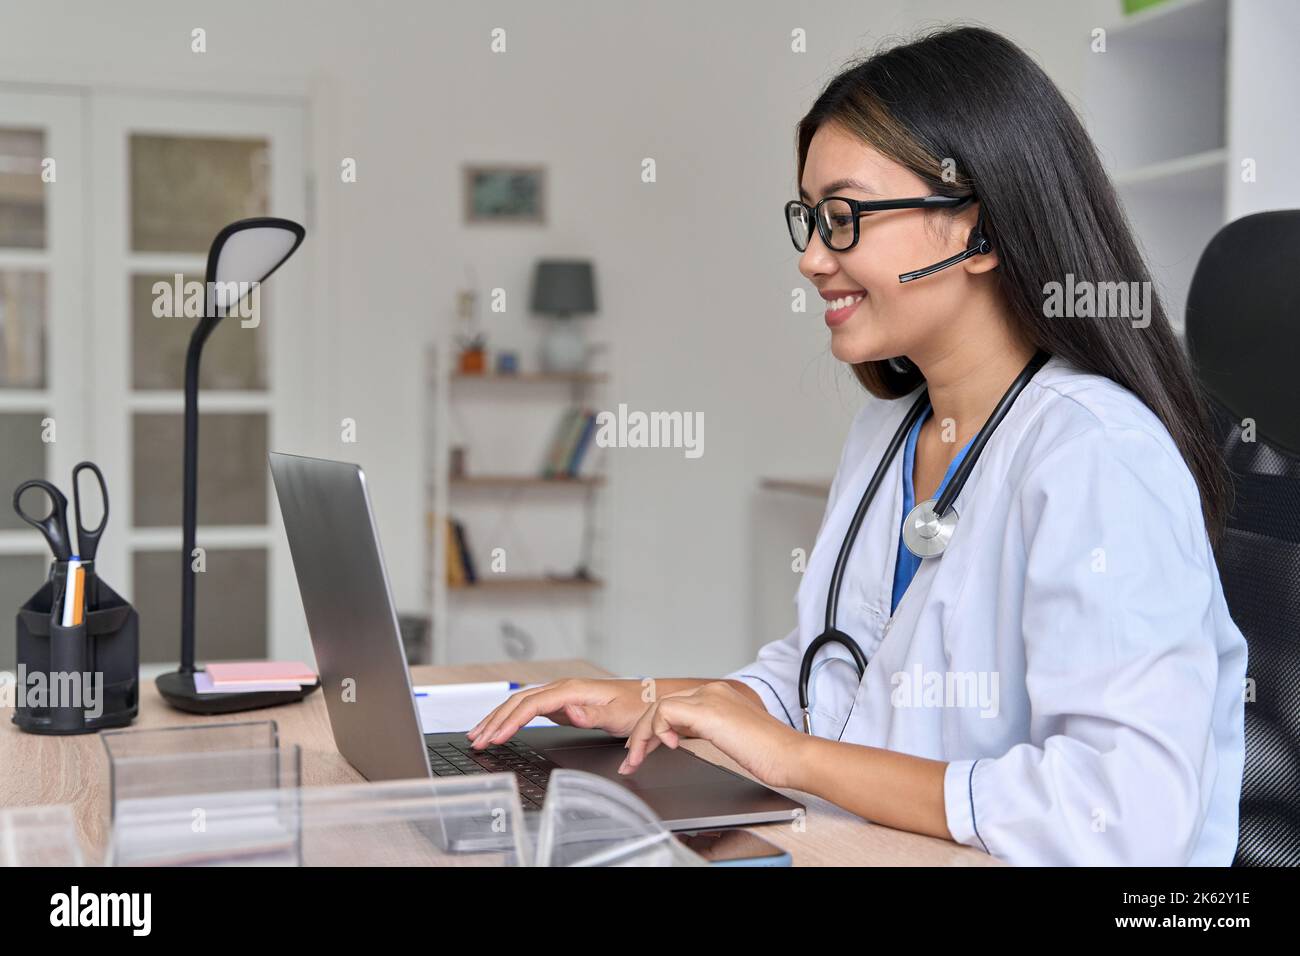 Vue latérale sur un jeune médecin asiatique communiquant en ligne avec un patient sur un ordinateur portable Banque D'Images